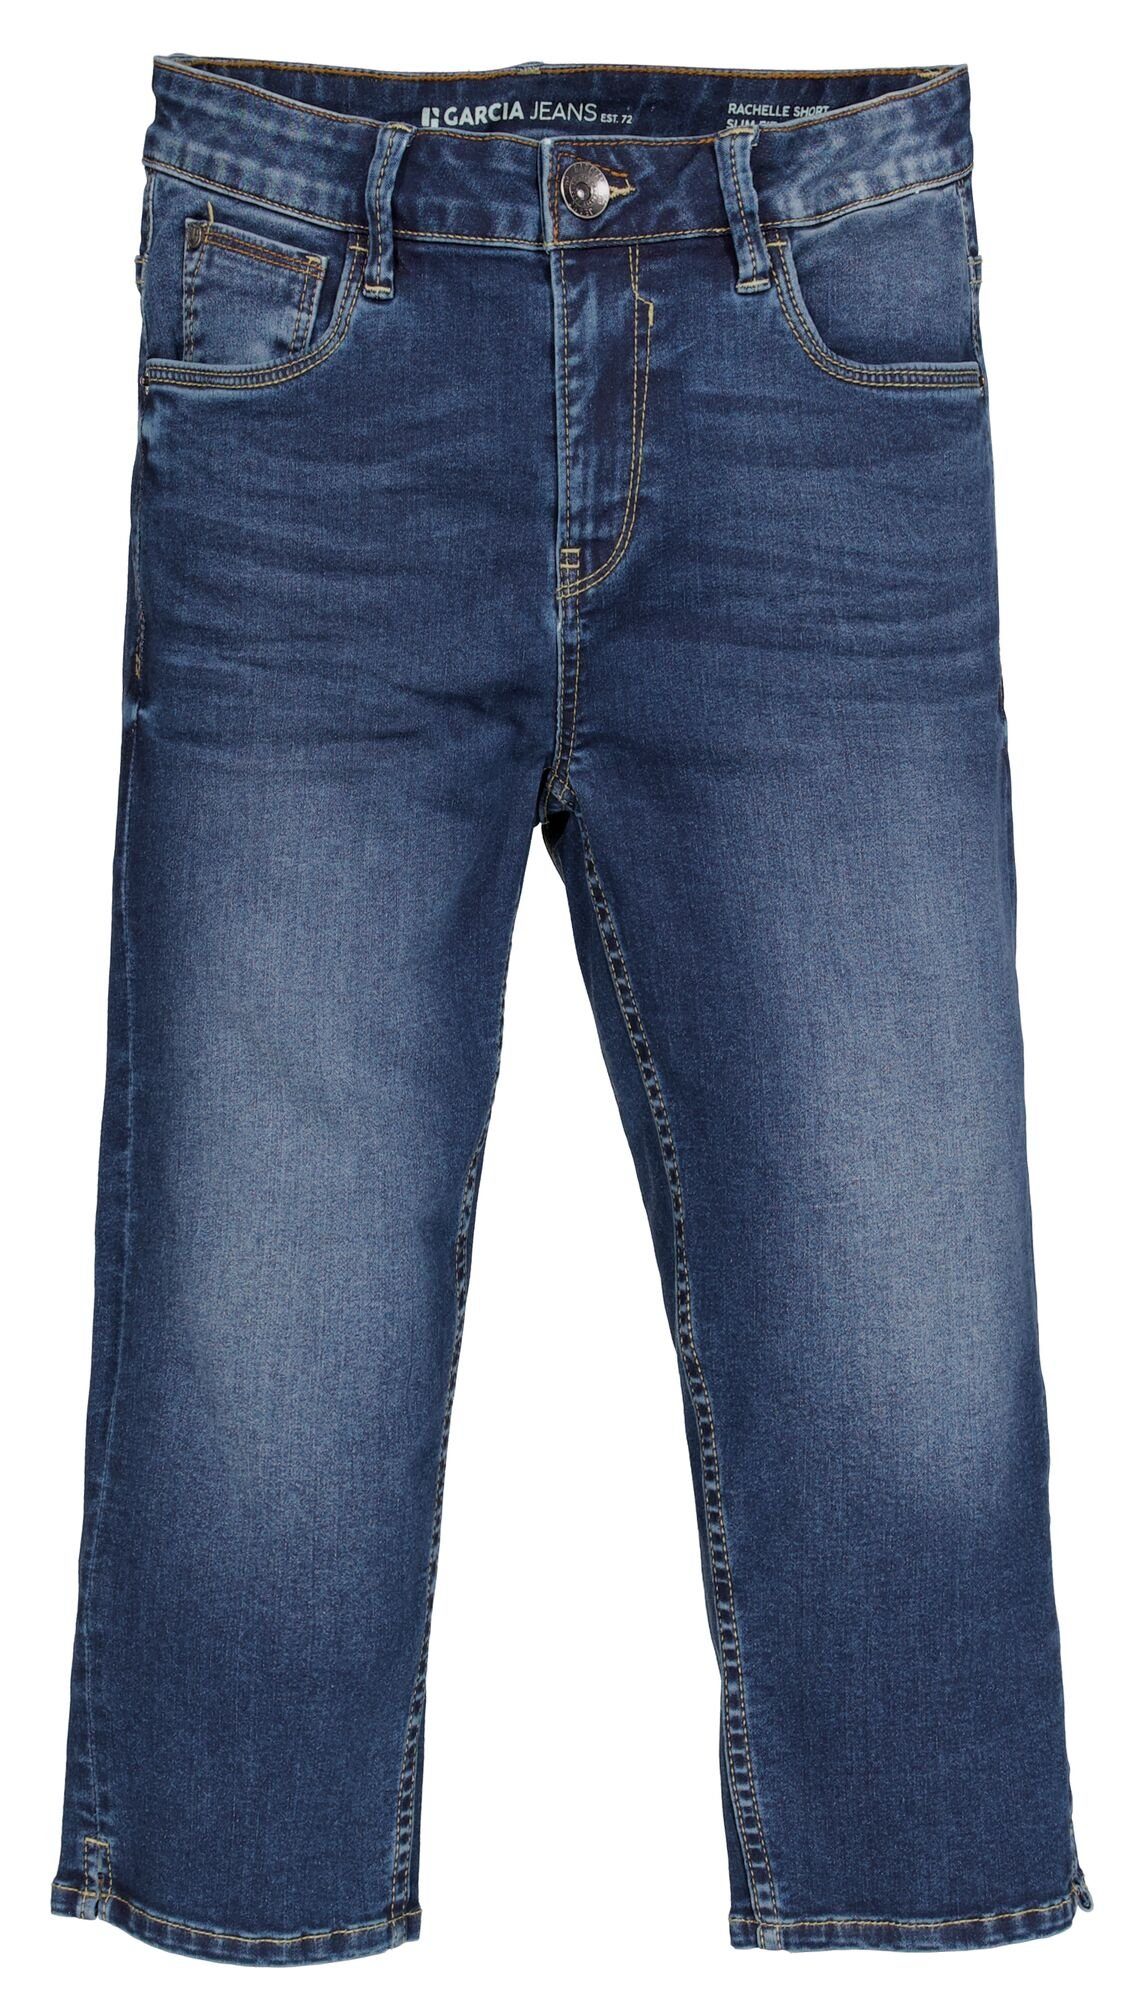 GARCIA JEANS Stretch-Jeans GARCIA CELIA CAPRI SLIM dark used denim blue 277.7509 - Flow Denim